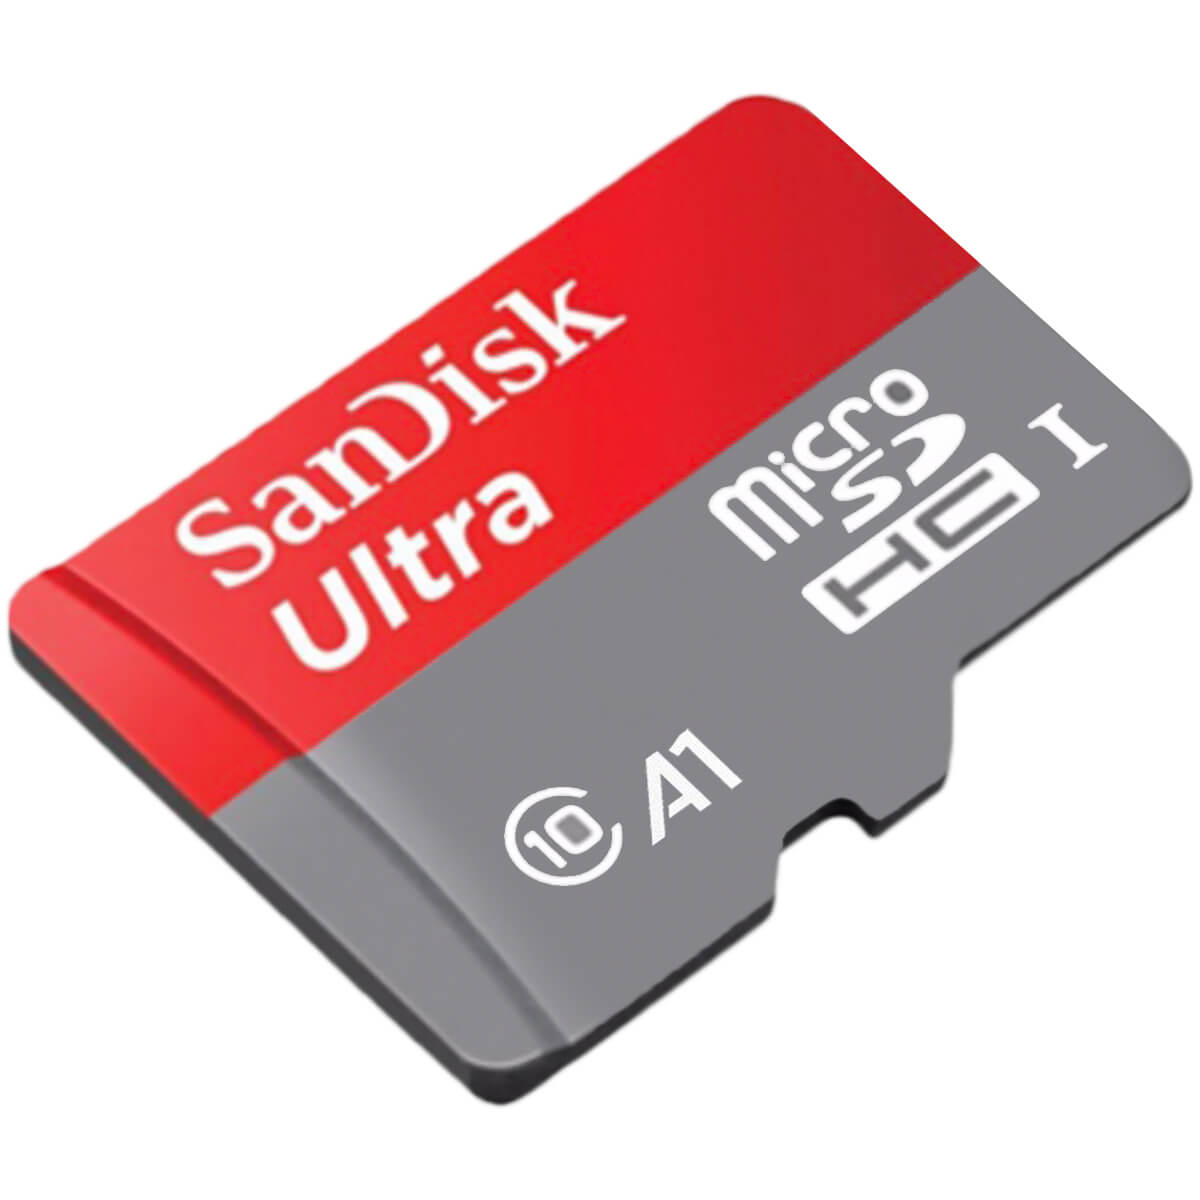 کارت حافظه سن دیسک Ultra A1 microSDHC 98MB/s کلاس 10 ظرفیت 16 گیگابایت